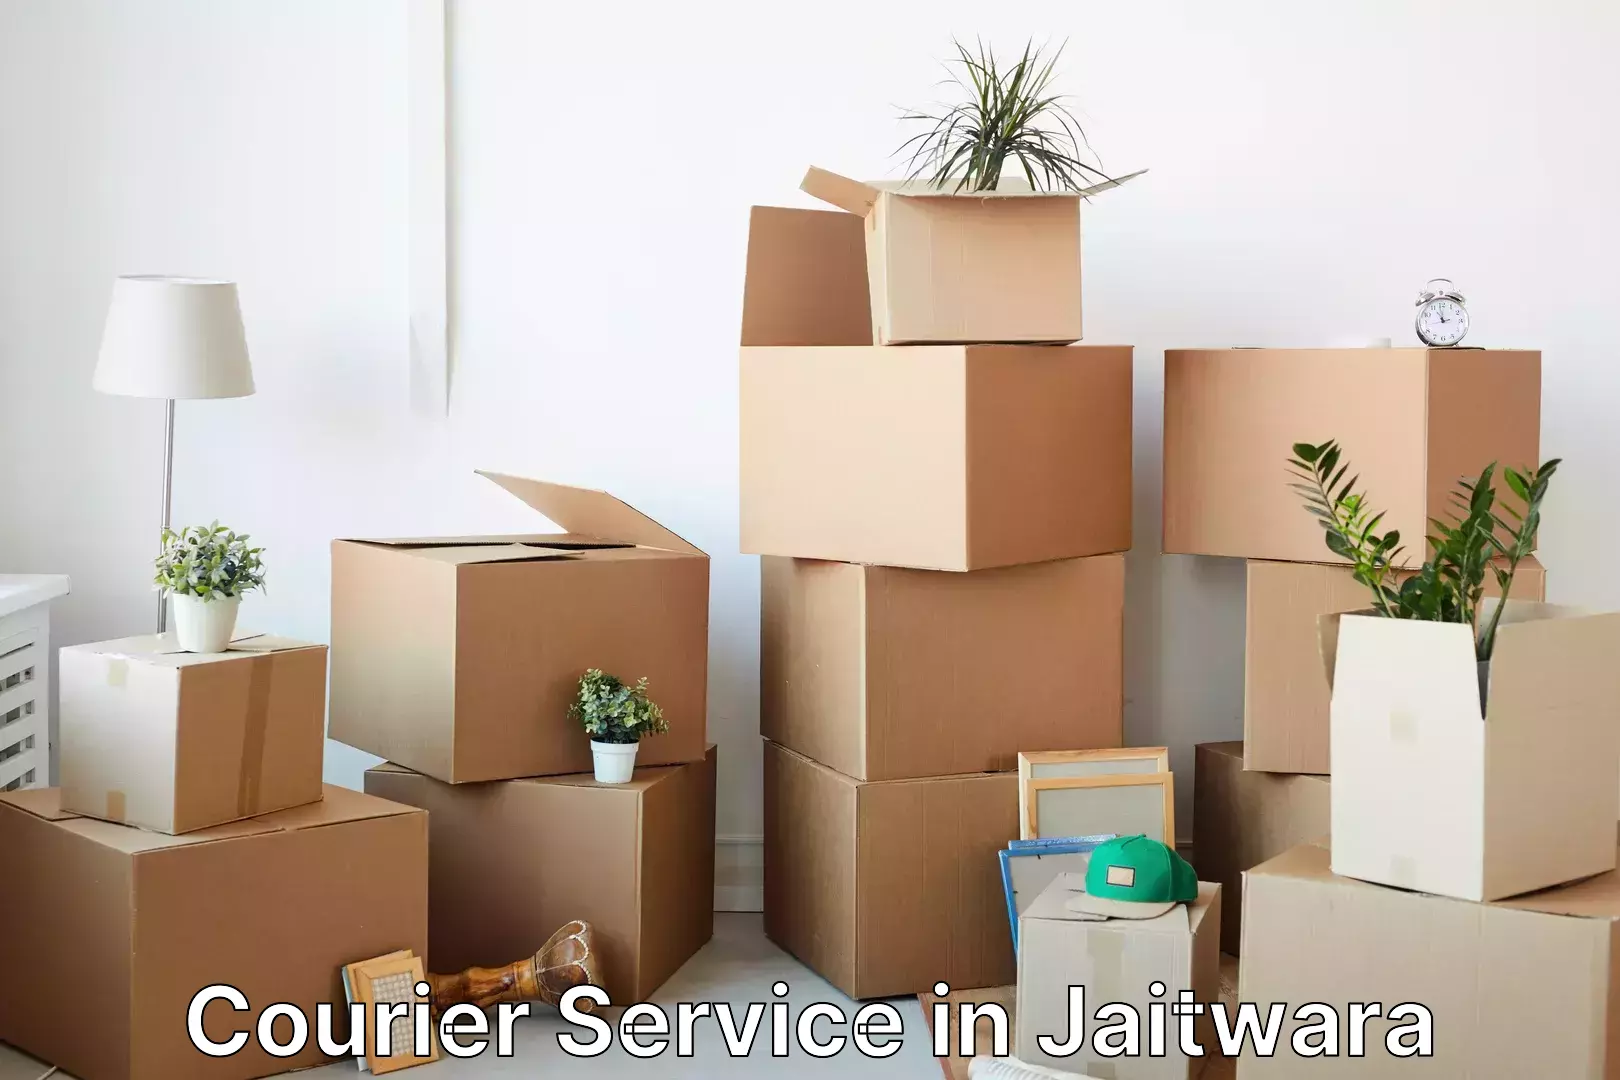 Residential courier service in Jaitwara